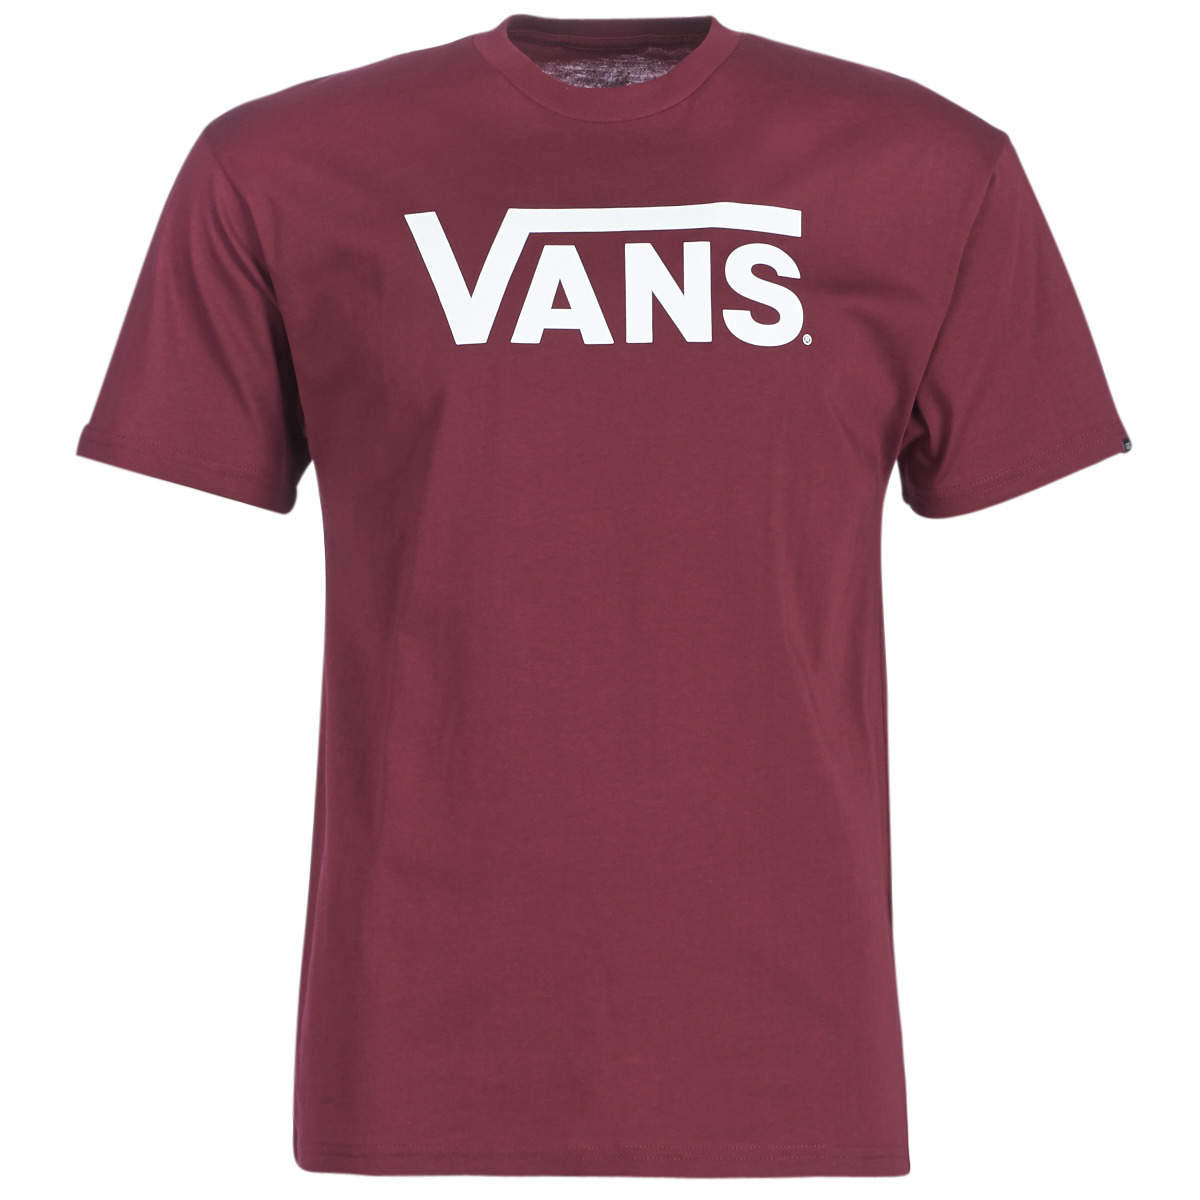 Textiel Heren T-shirts korte mouwen Vans VANS CLASSIC Bordeau